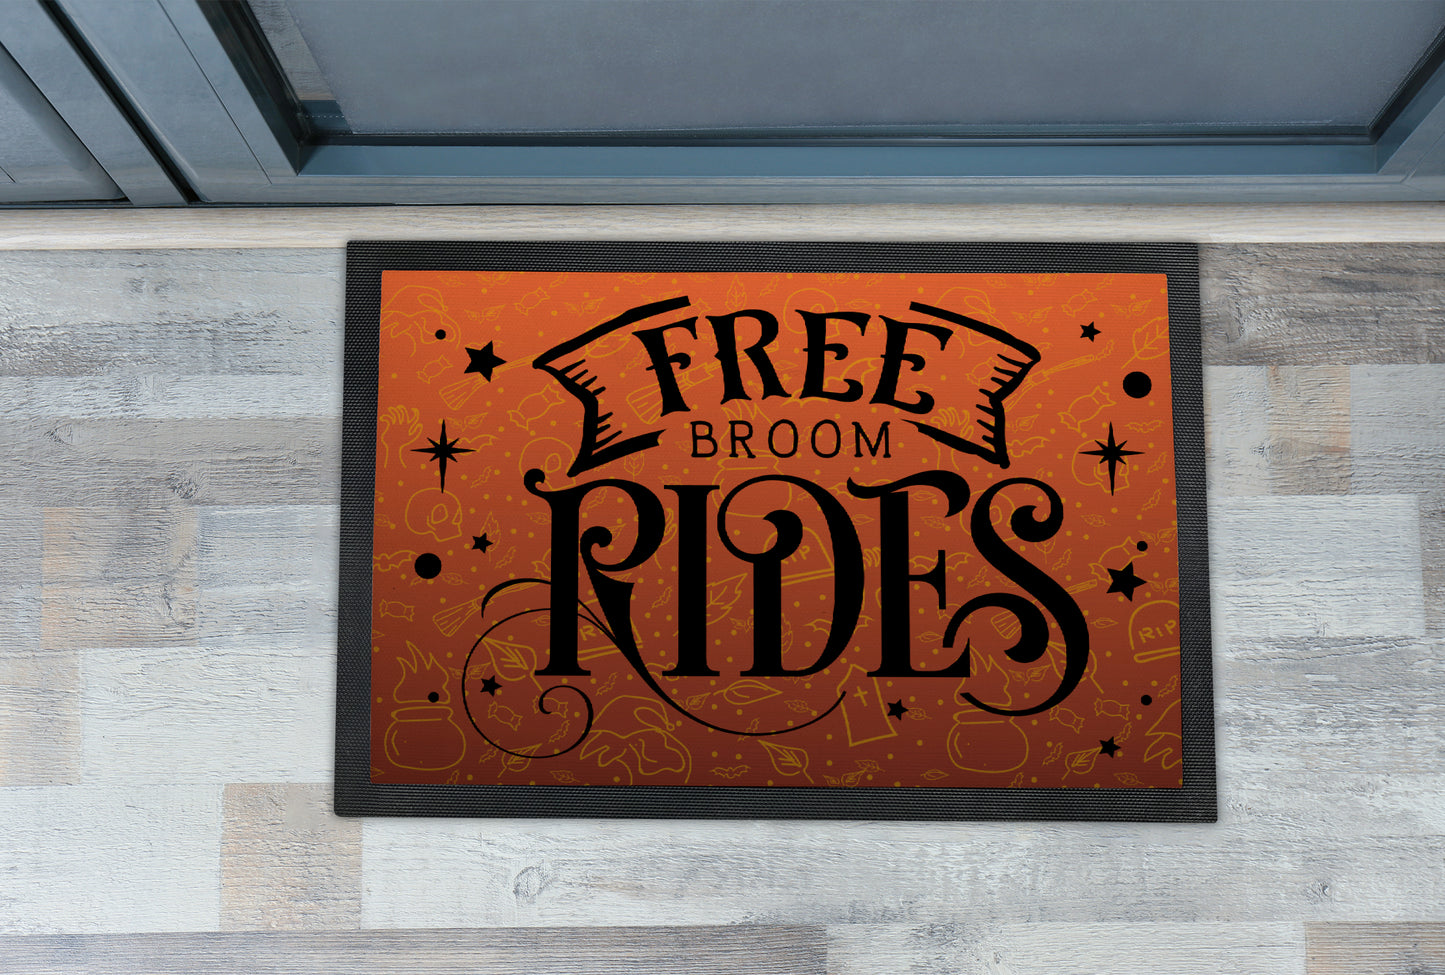 Halloween Doormat, Free Broom Rides